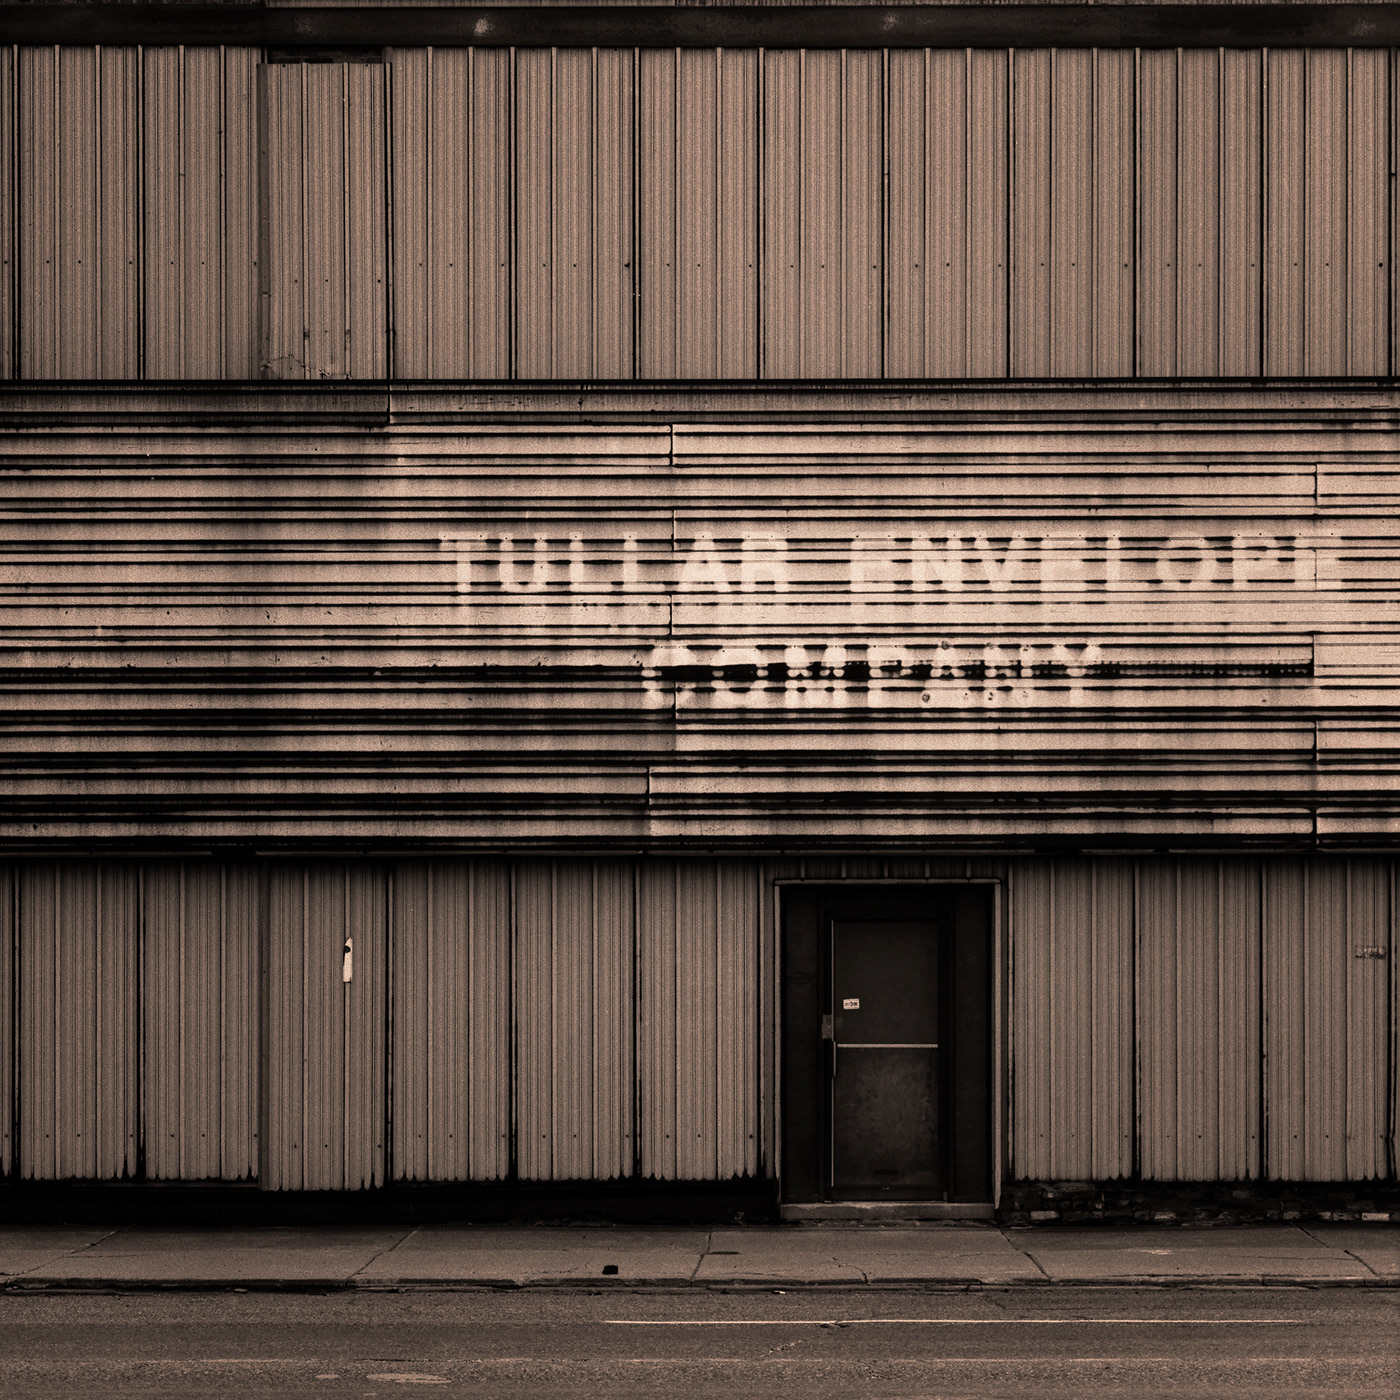 Tullar Envelope Company facade, in Detroit, Michigan.